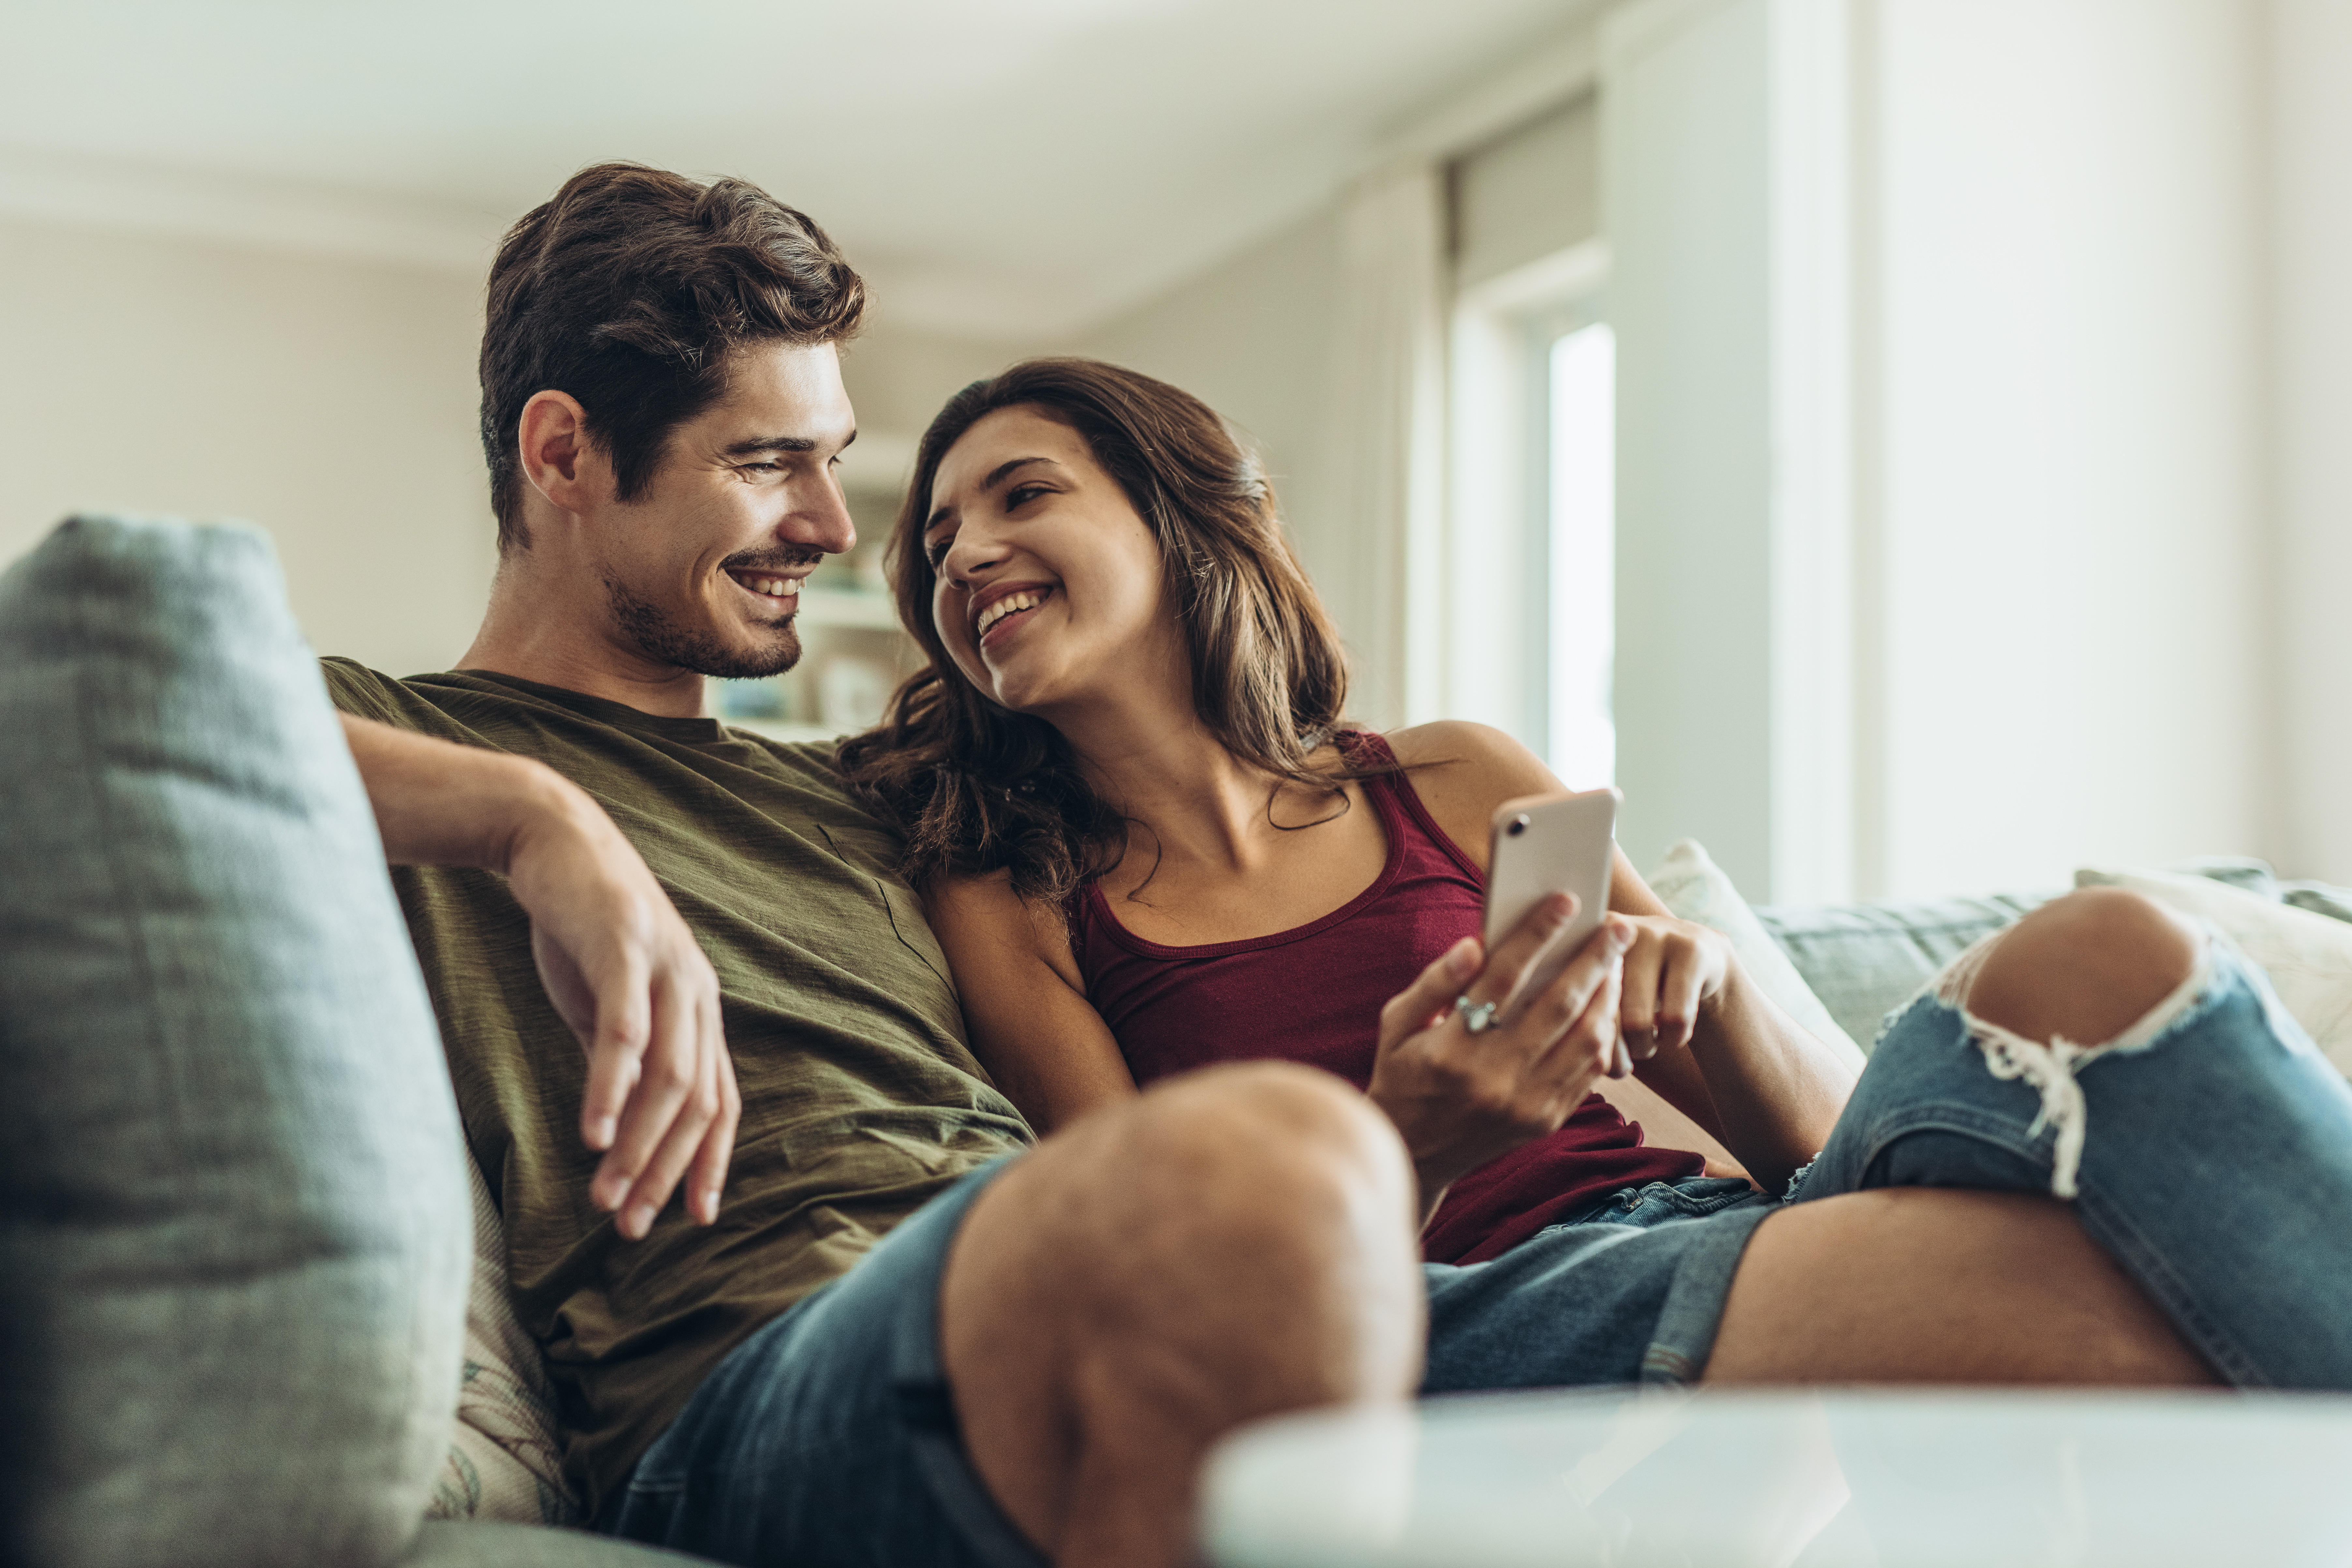 Ein junges Paar sitzt lachend auf einem Sofa und schaut auf ein Telefon | Quelle: Shutterstock